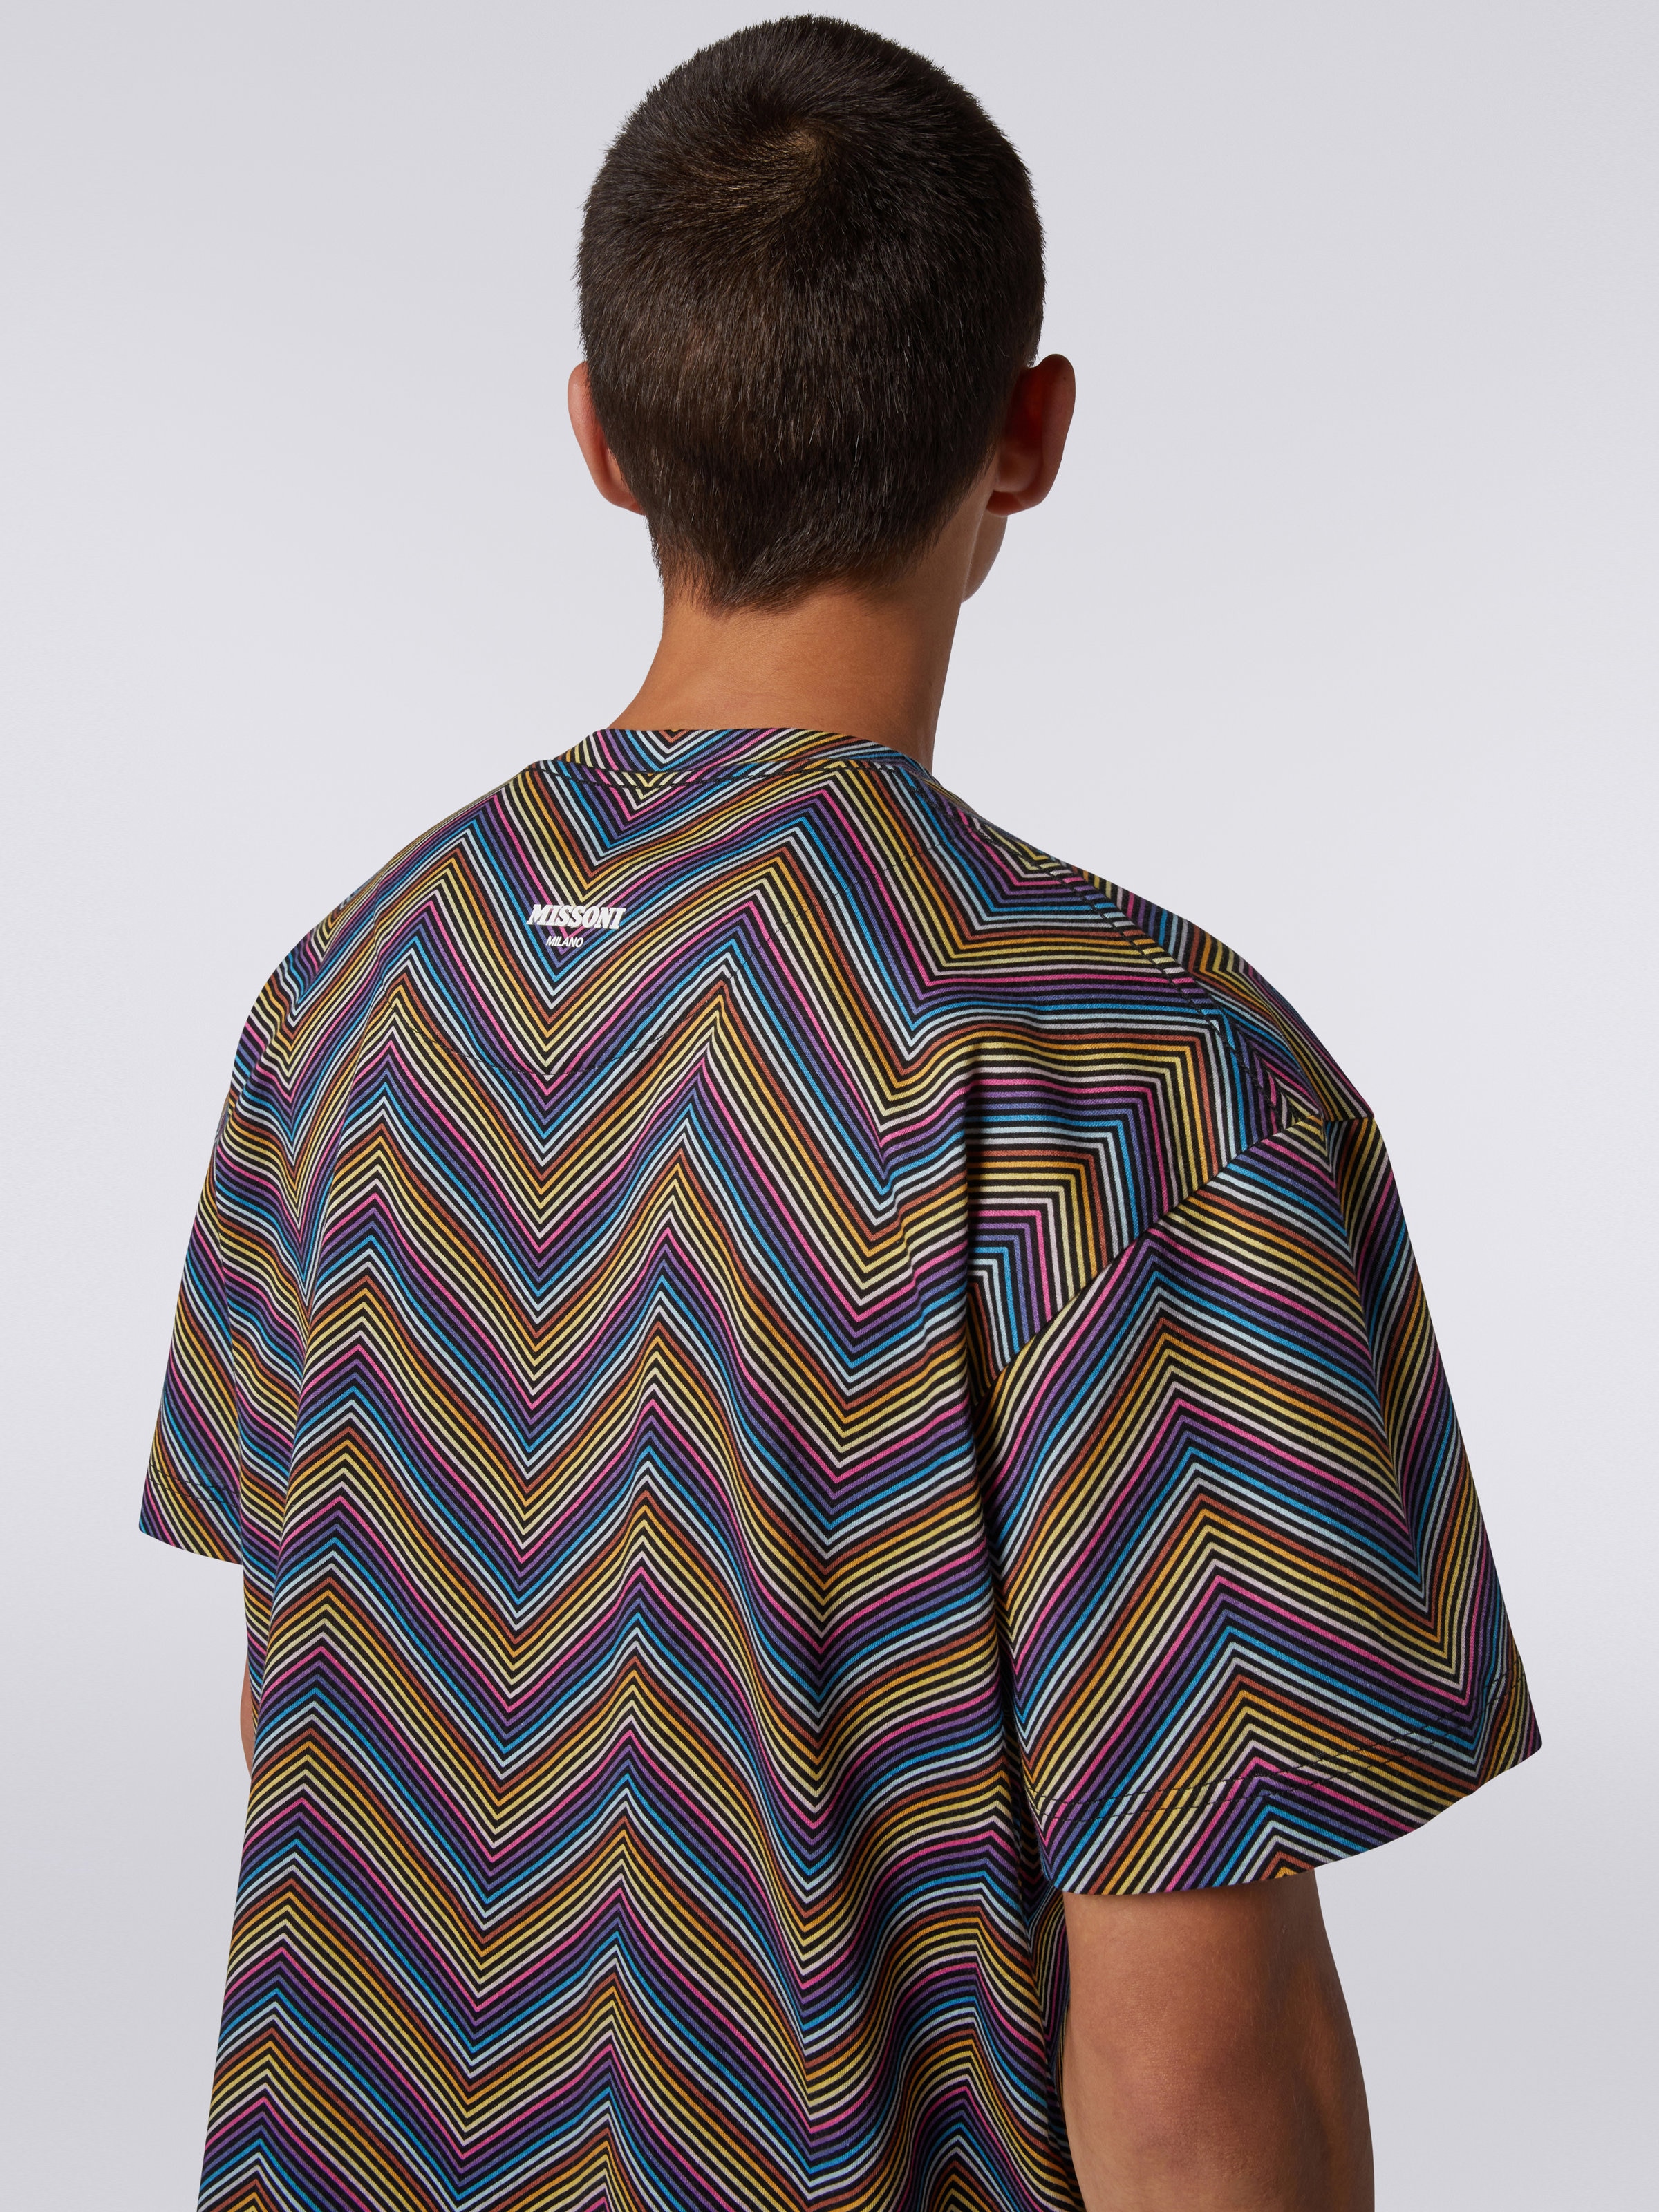 Baumwoll-T-Shirt mit Rundhalsausschnitt und durchgehendem Zickzackmuster, Mehrfarbig  - 4